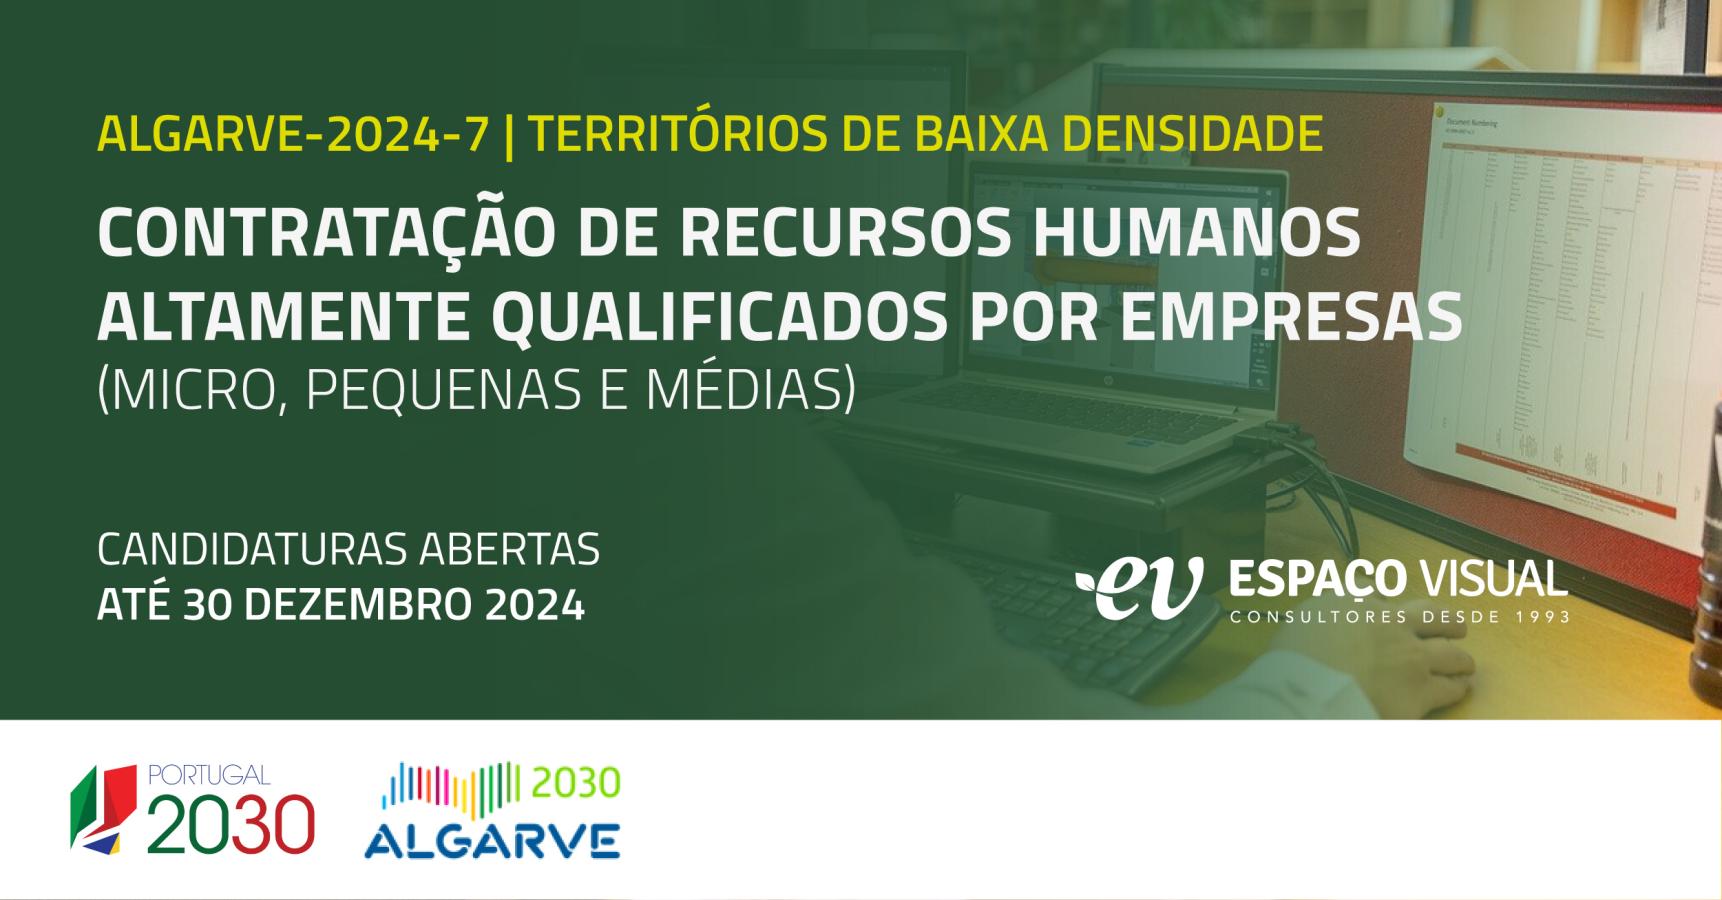 Contratação de Recursos Humanos Altamente Qualificados por empresas (PME) | ALGARVE-2024-7 | Territórios de Baixa Densidade